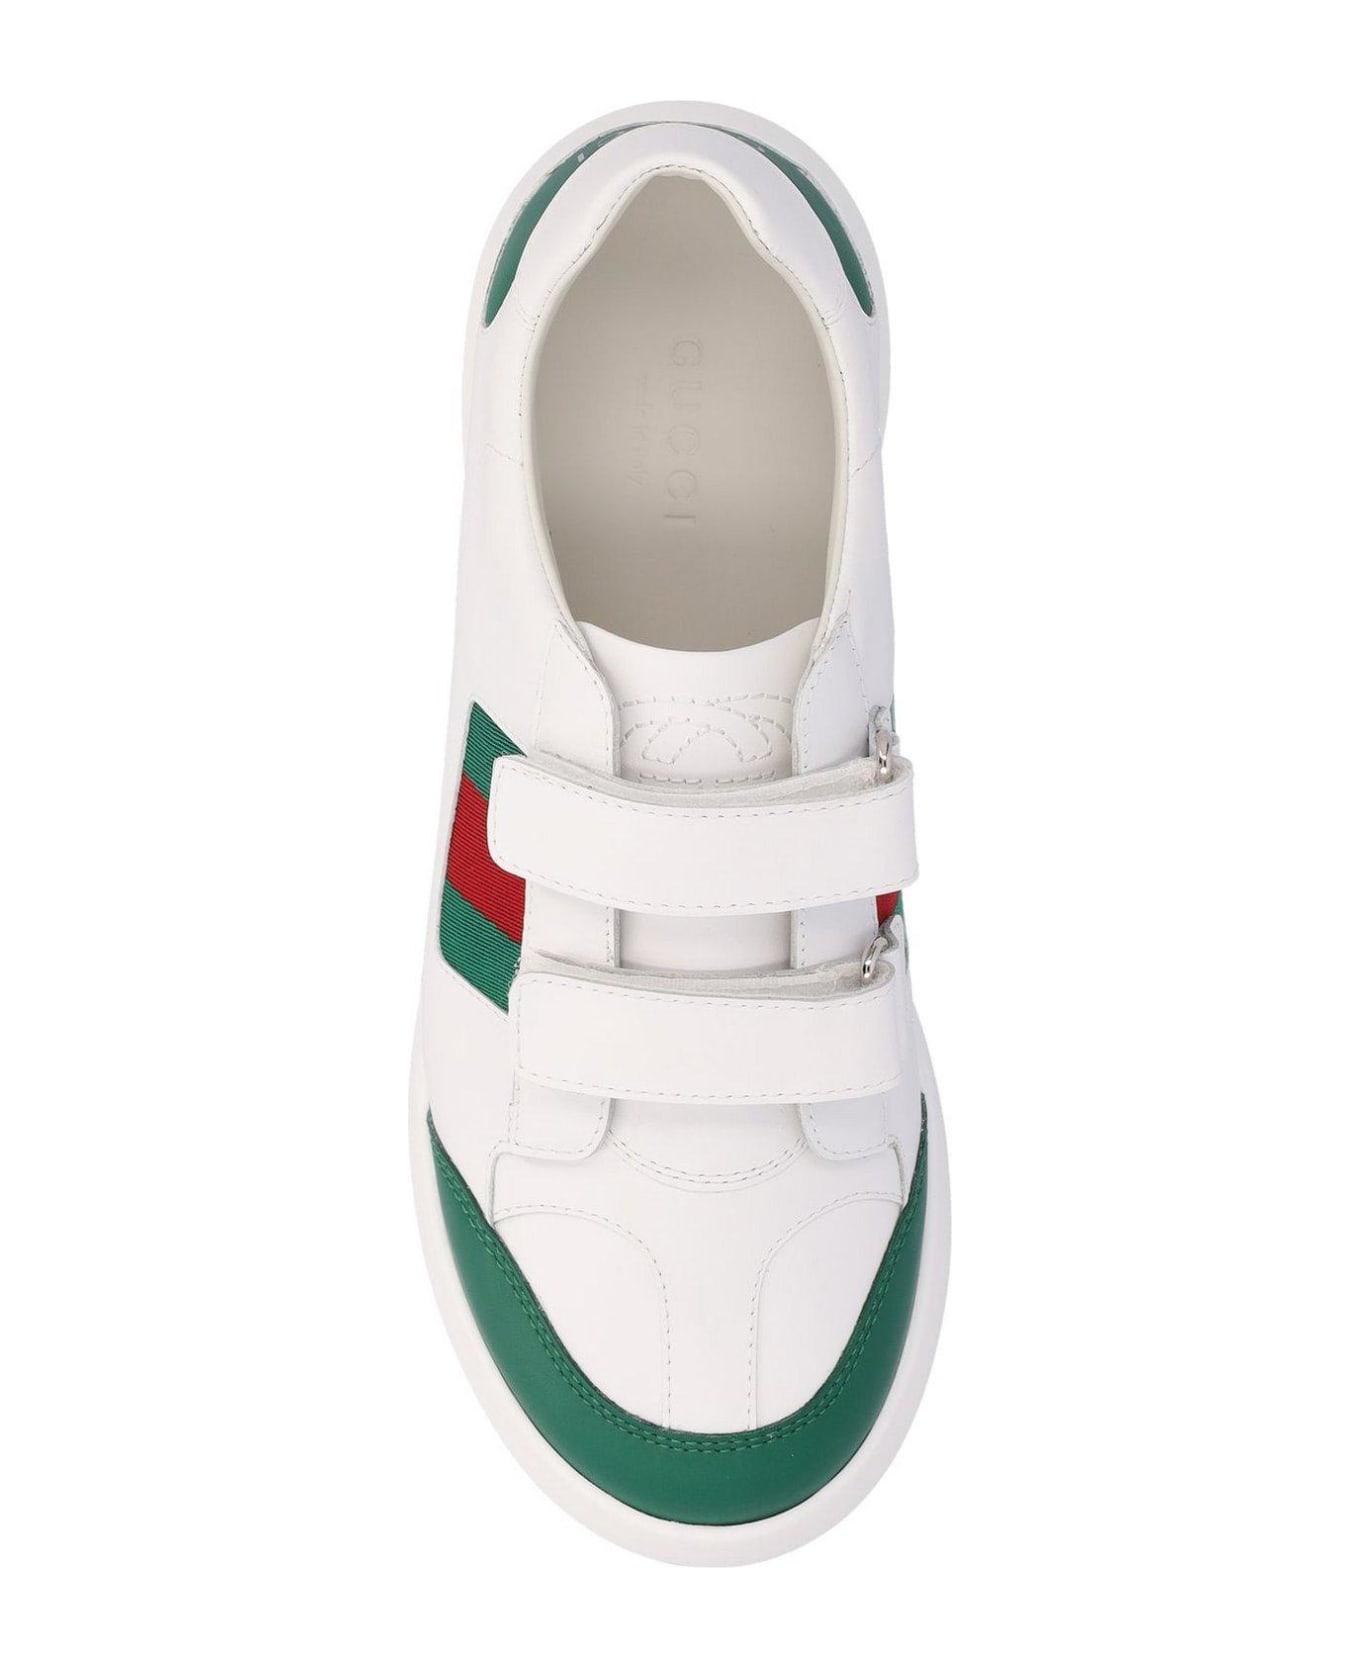 Gucci Logo Printed Round Toe Sneakers - MultiColour